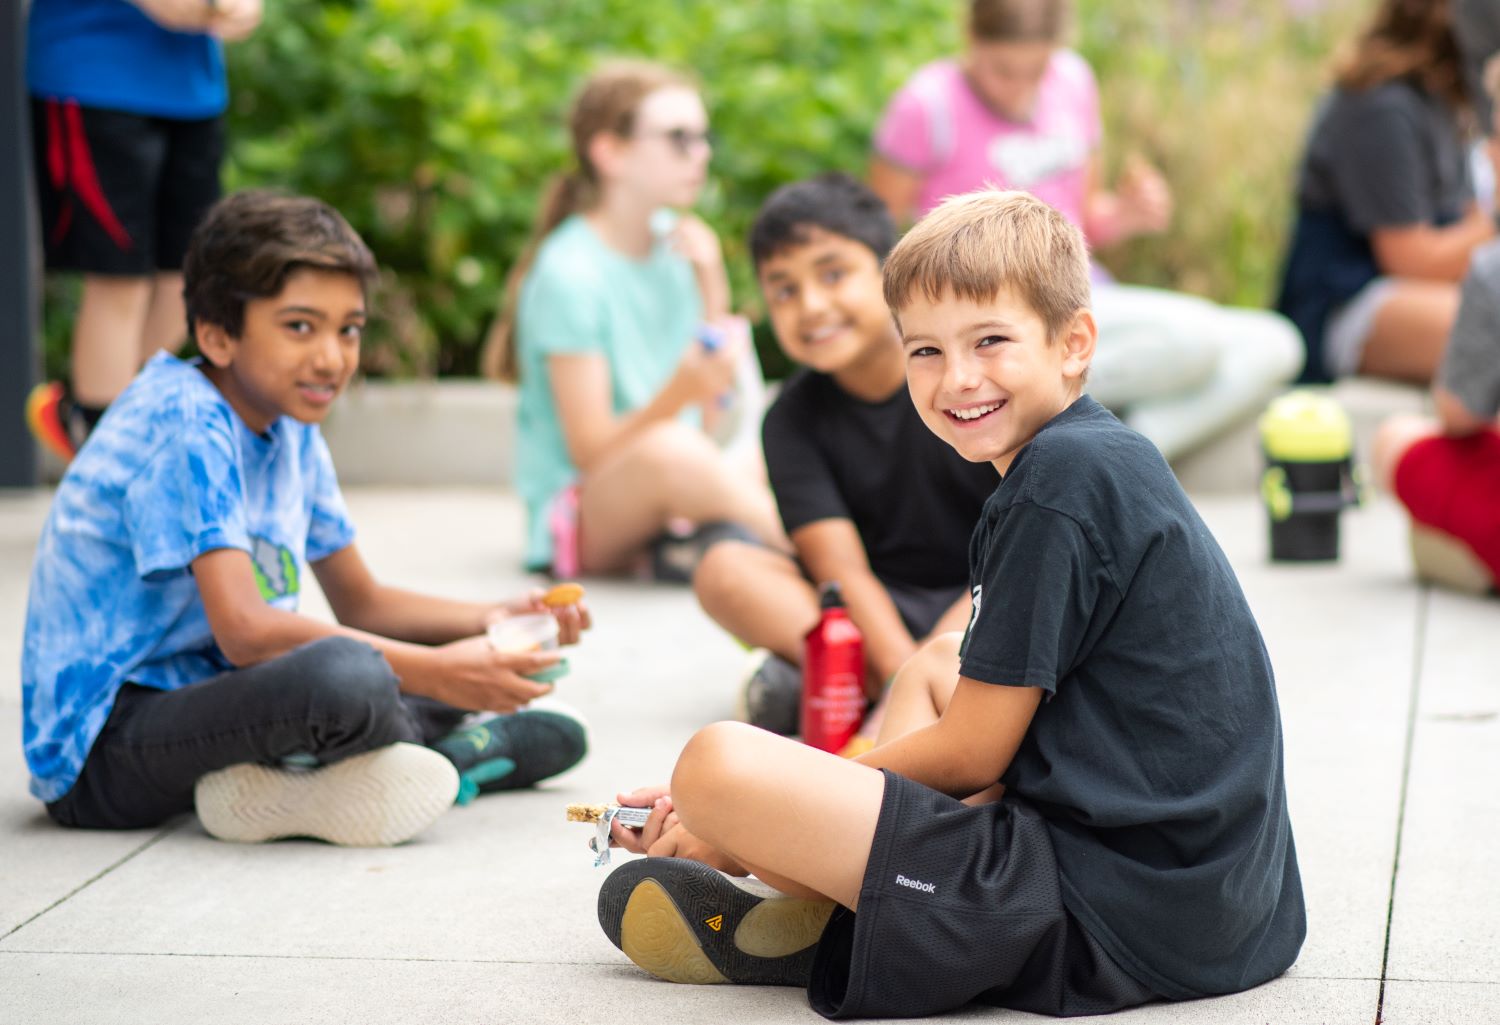 Kids at summer camp enjoying snack.